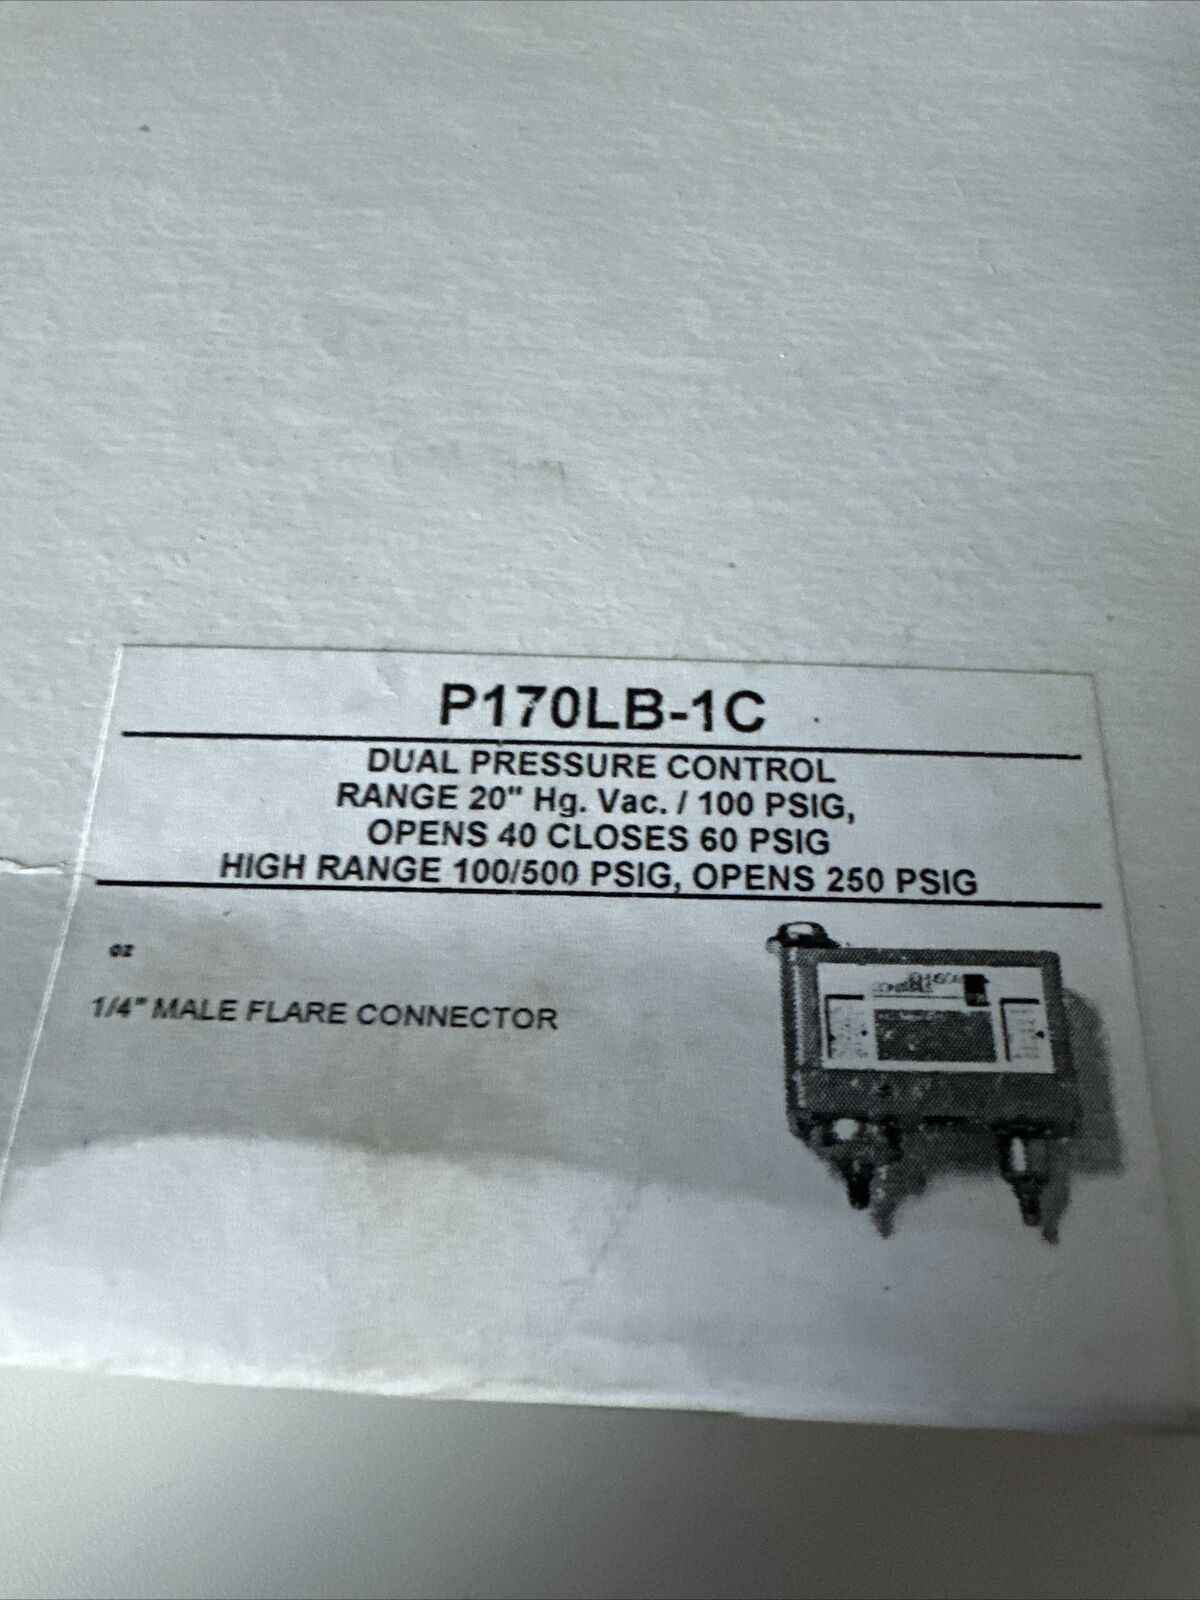 PENN (240) P170LB-1C Dual Pressure Control.  OPENS AT 40 CLOSES AT 60 PSIG , NEW